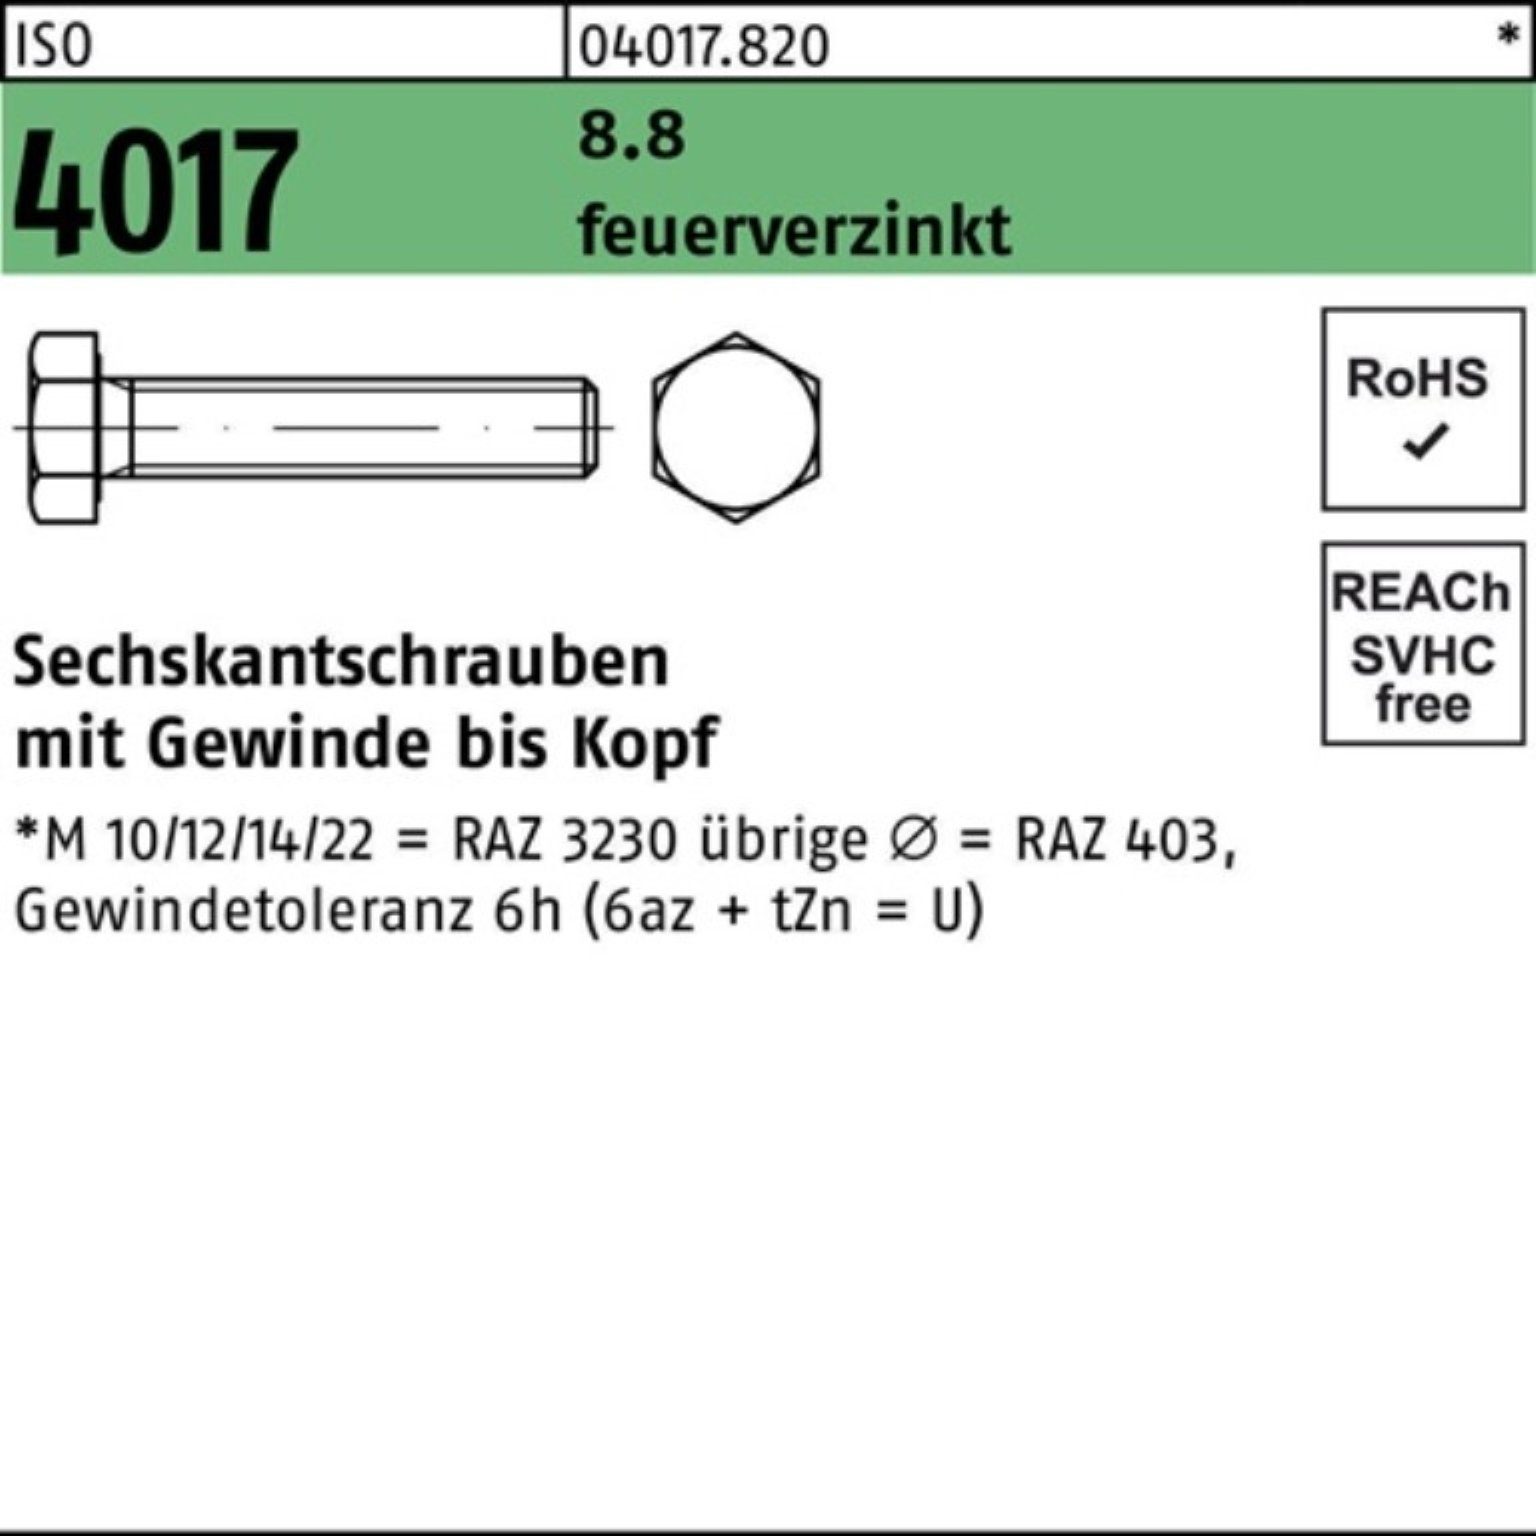 Bufab Sechskantschraube 100er Pack Sechskantschraube ISO 4017 VG M12x 80 8.8 feuerverz. 50 St